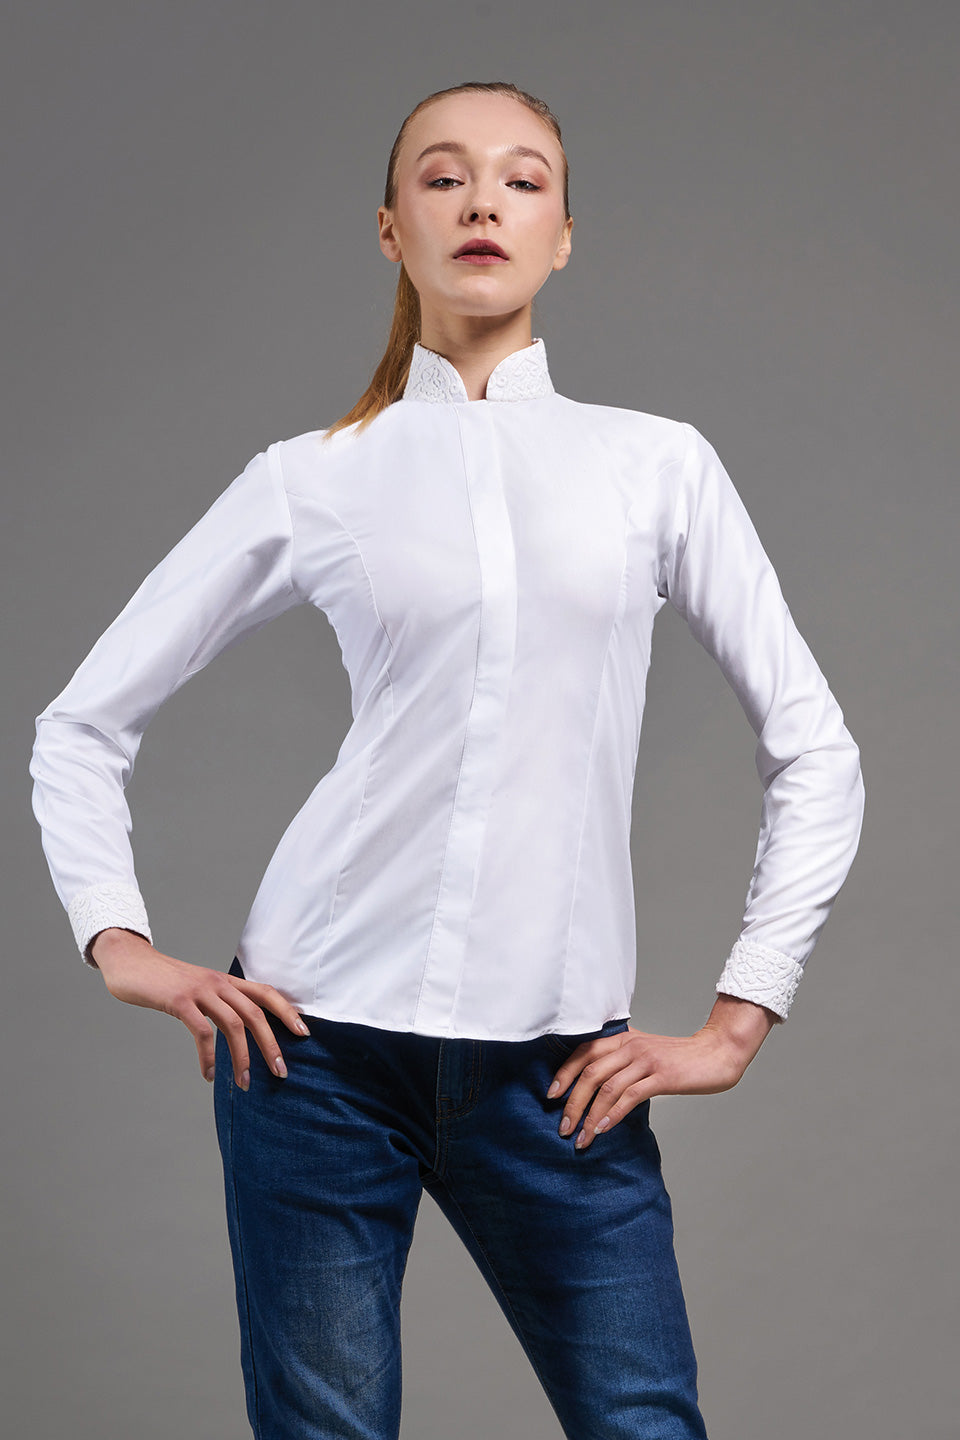 A Shirt by Adam Liew Cassandra White Shirt On Model